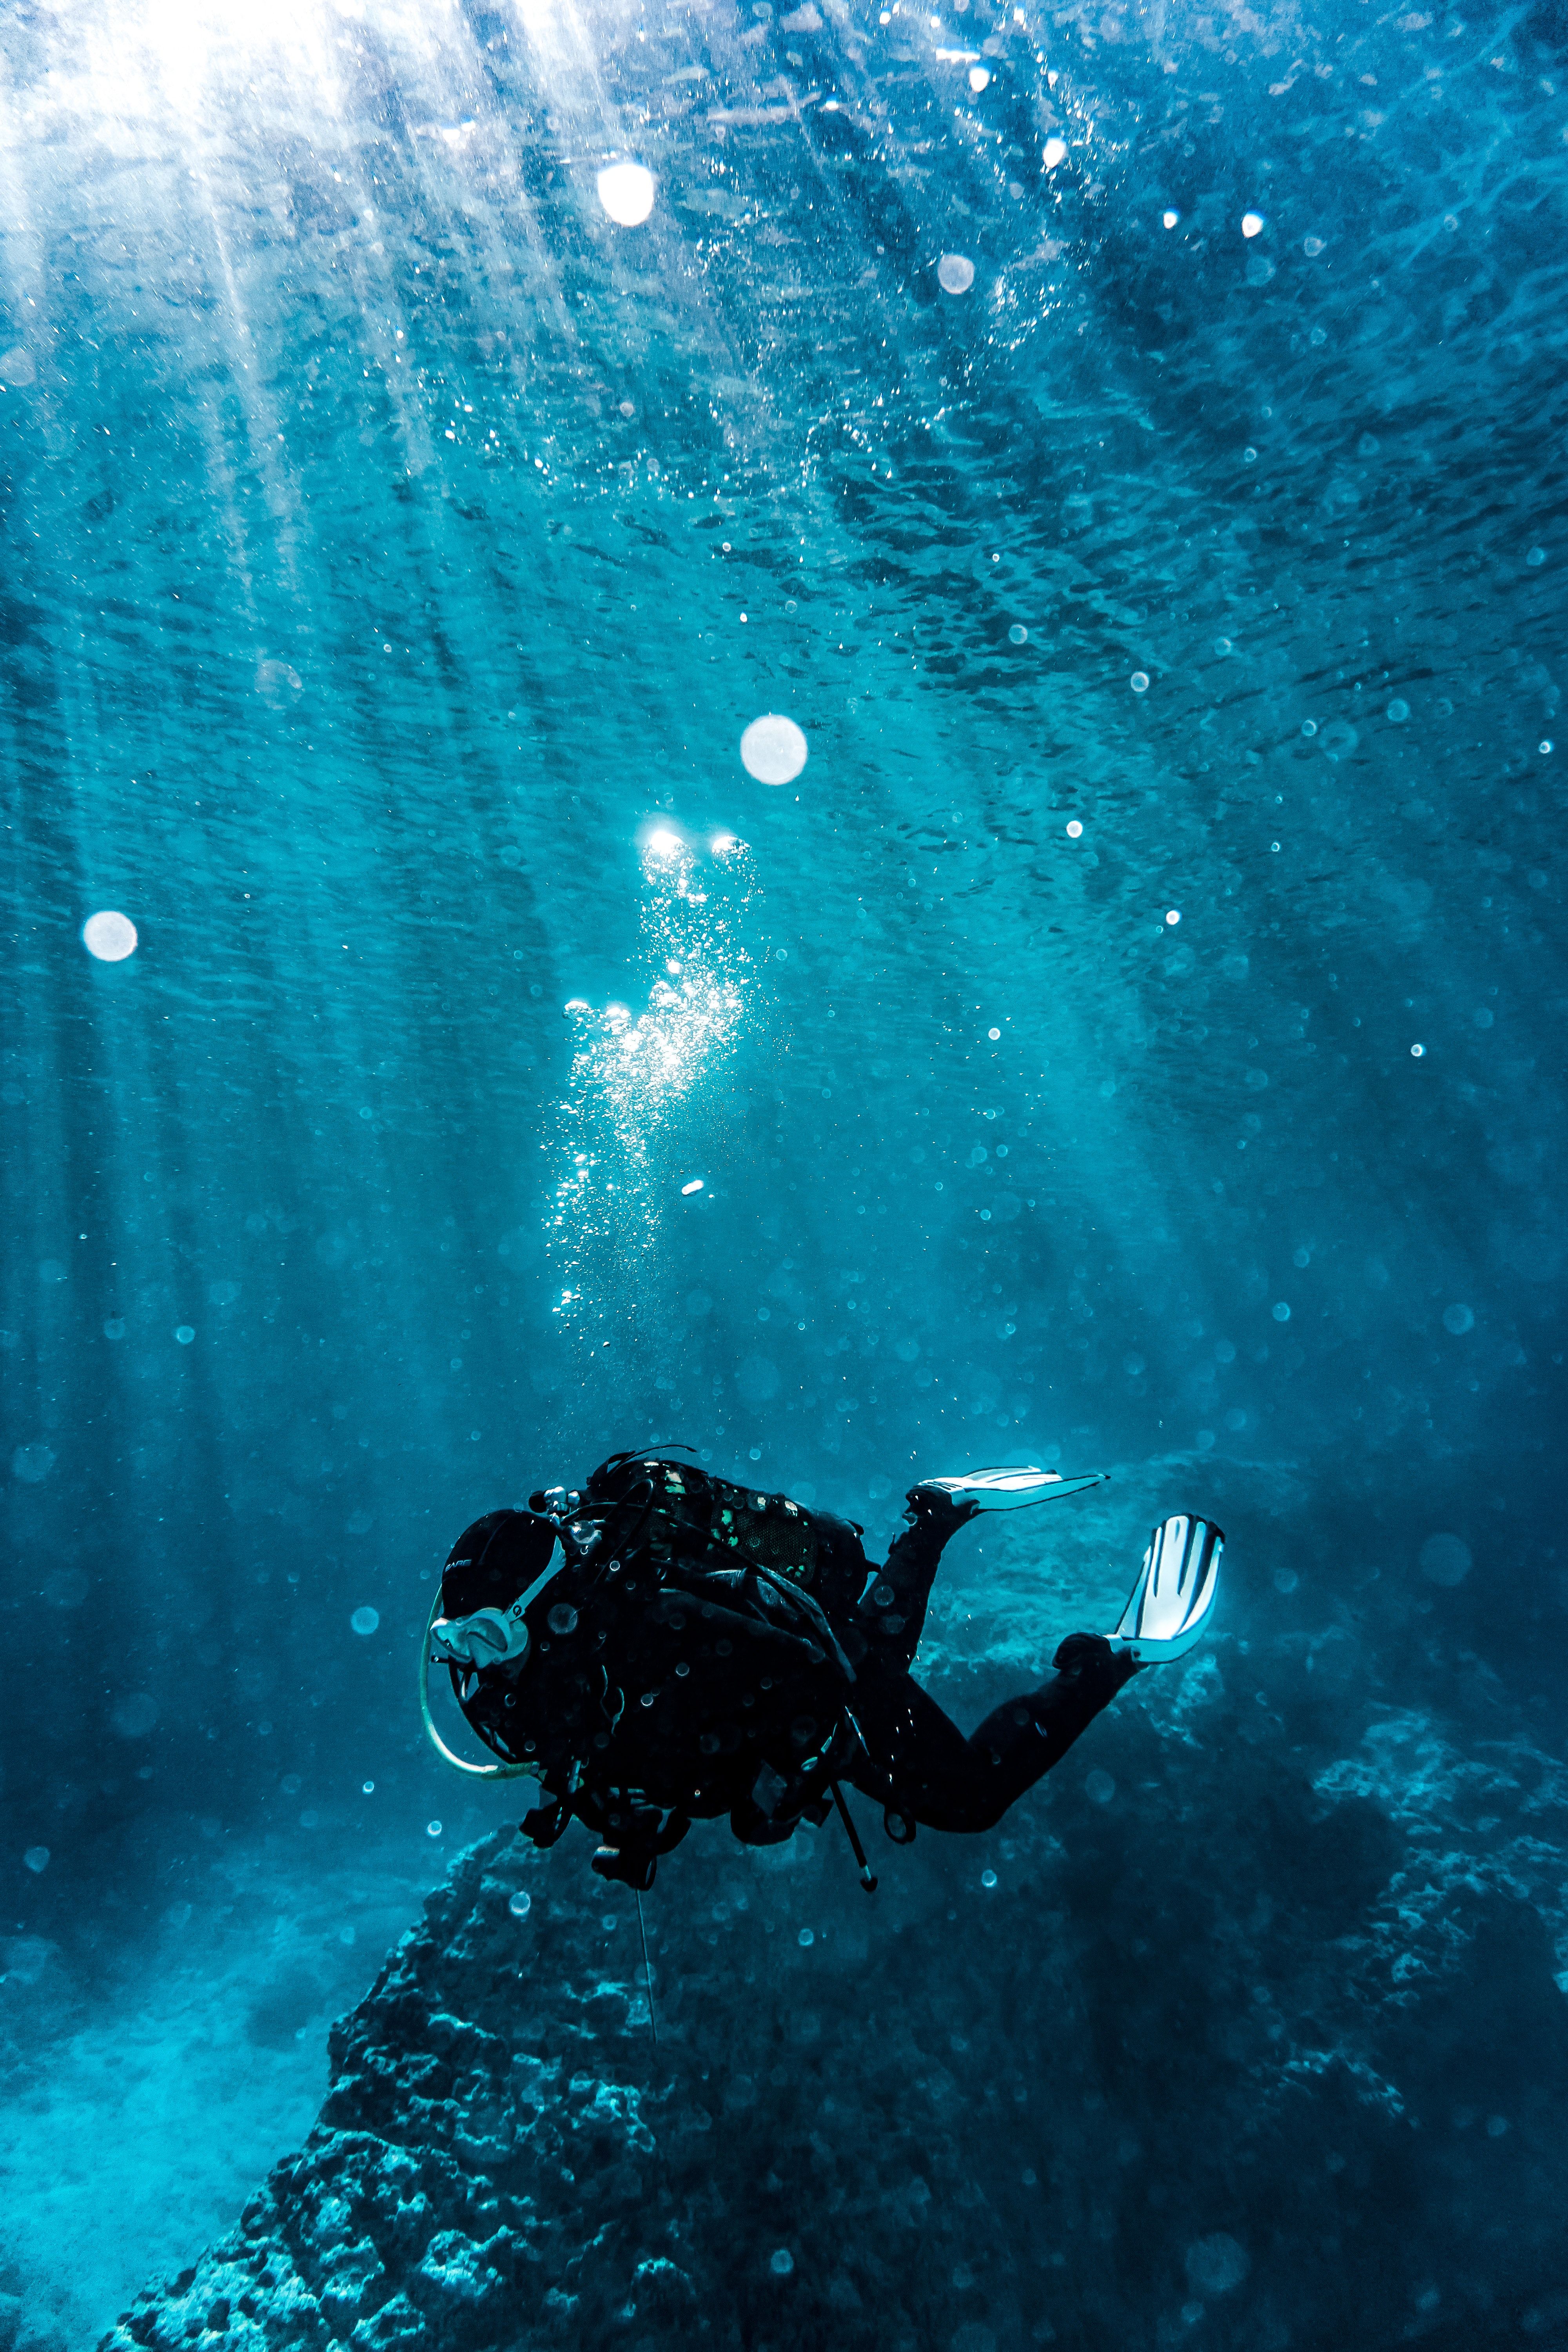 A person wearing scuba gear swimming underwater. - Underwater